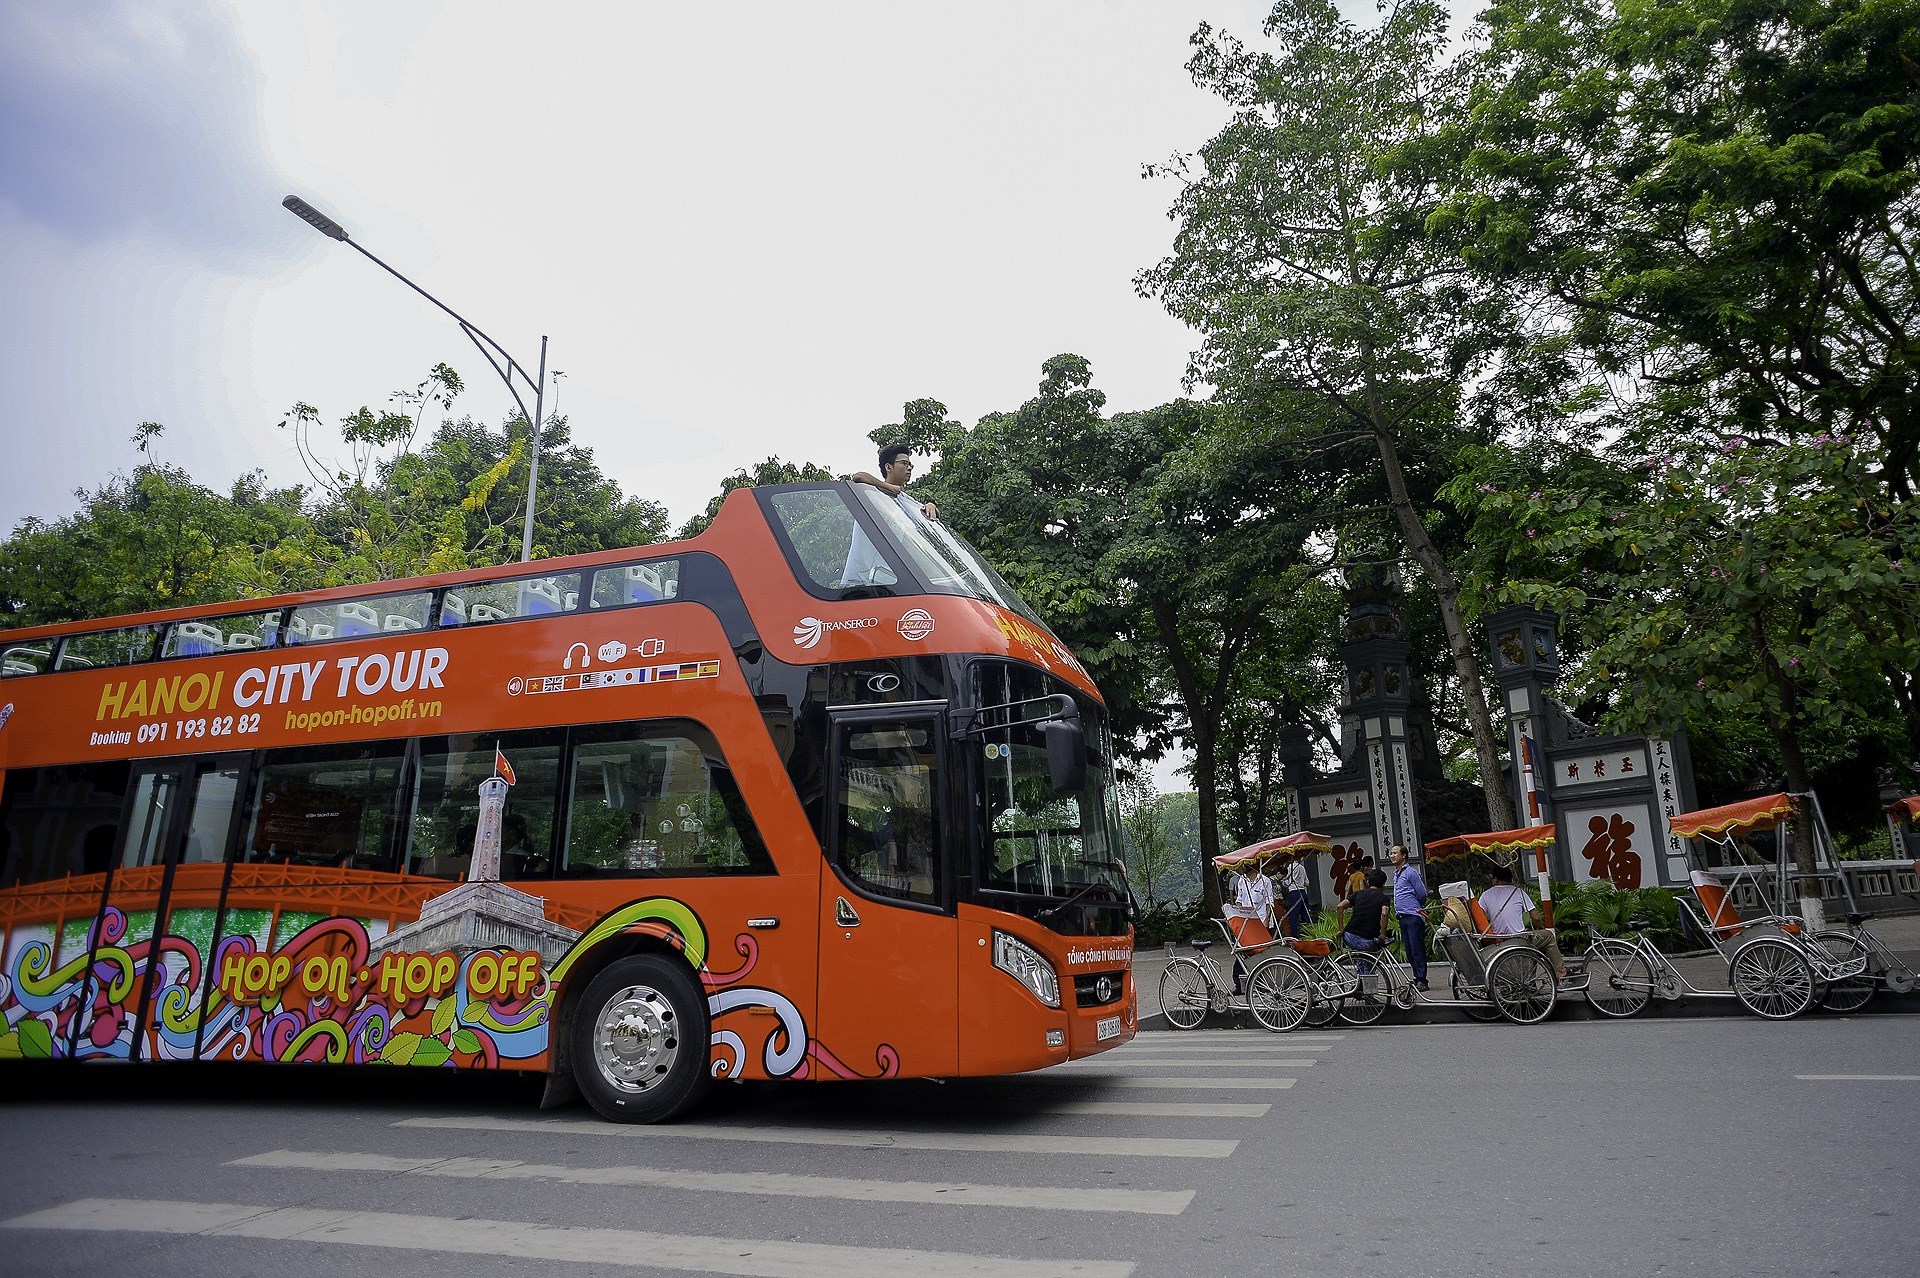 Decouvrir Hanoi a partir des bus a imperiale hinh anh 3